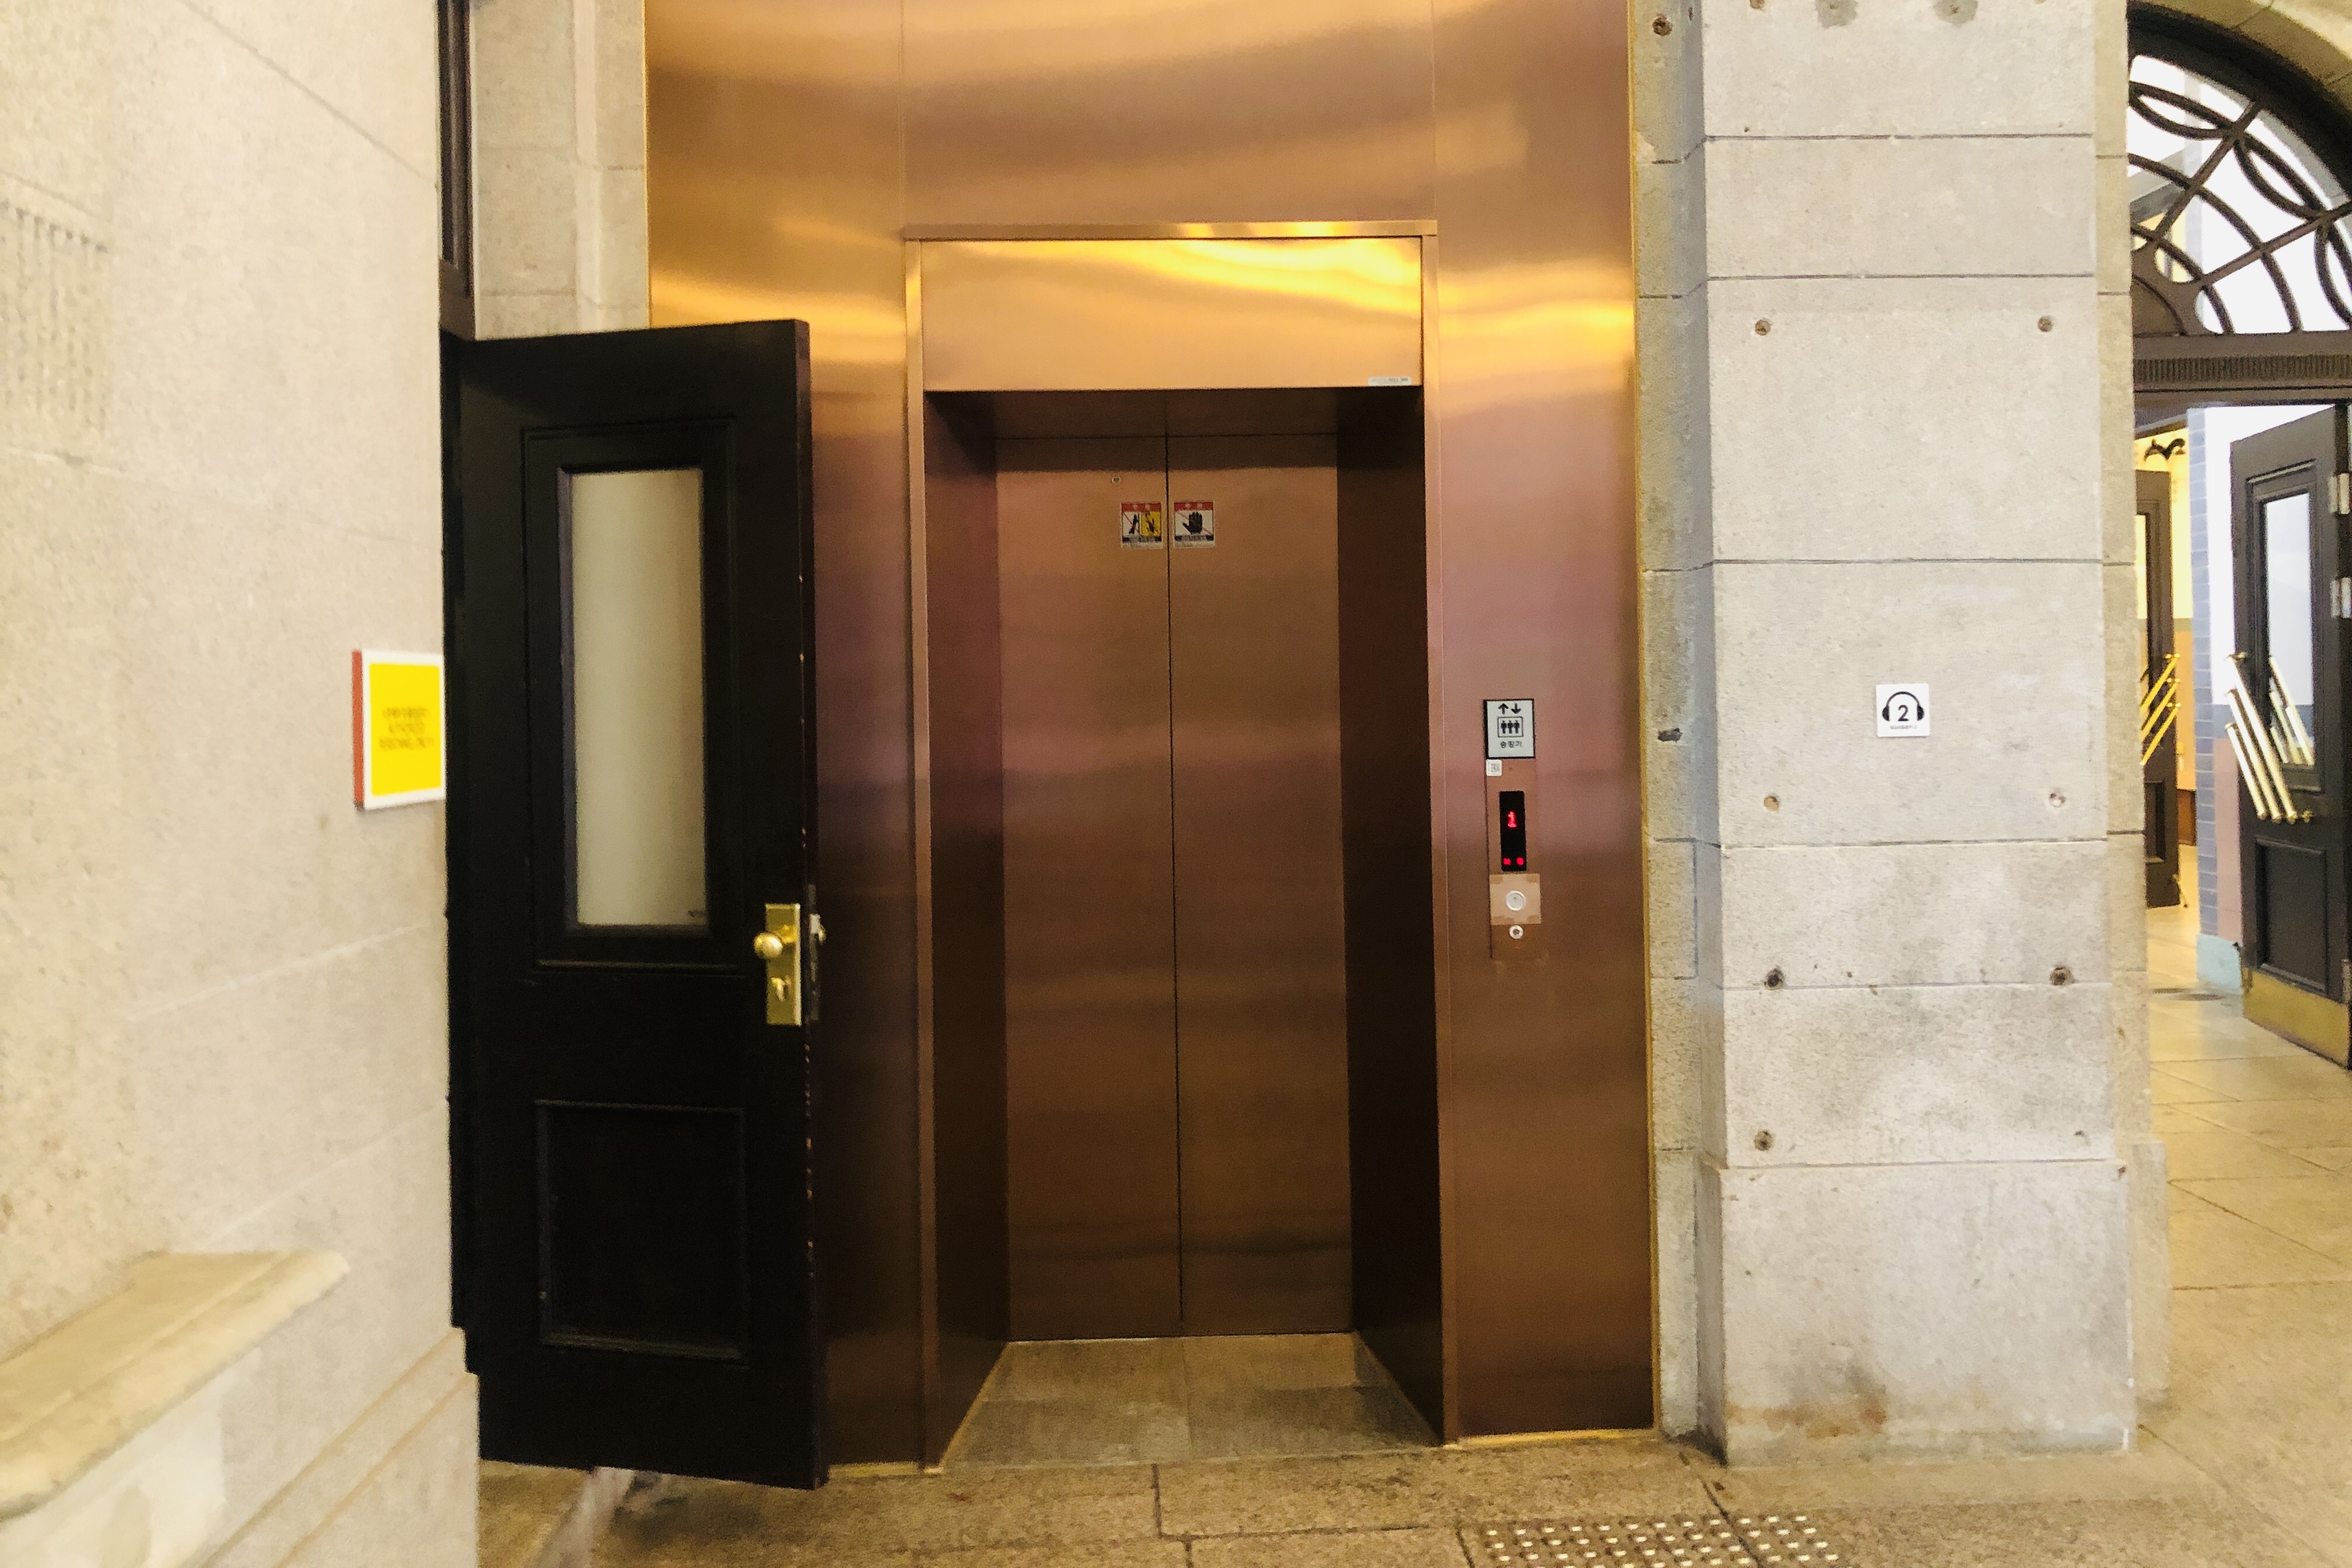 엘리베이터0 : 폭이 좁은 문화역서울284 엘리베이터 전경